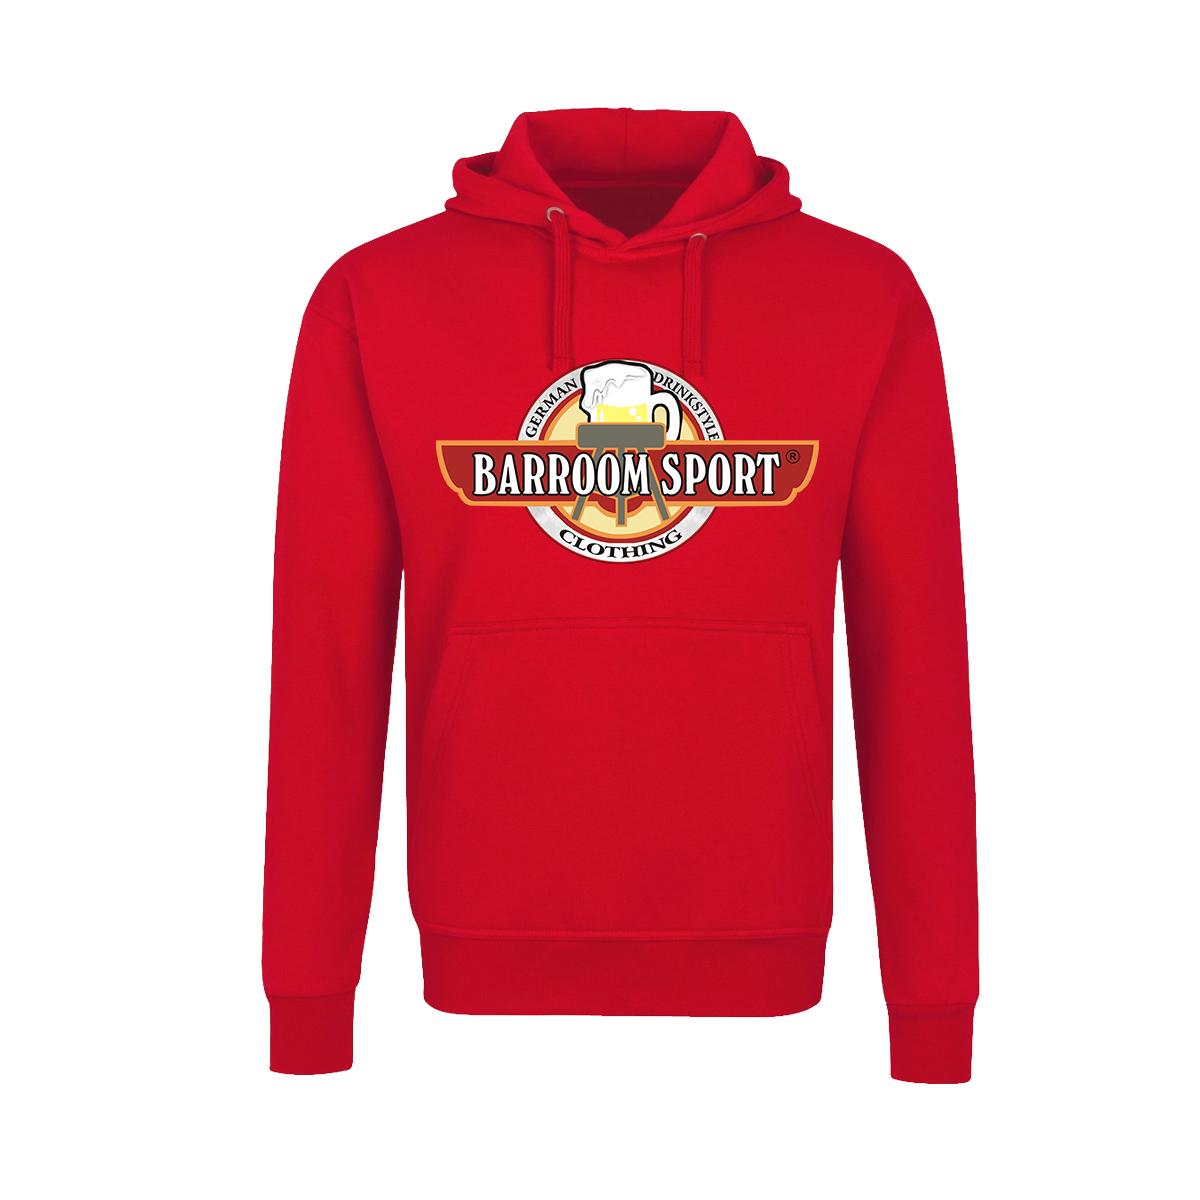 Barroom Sport - Männer Kapuzenpullover - Drinkstyle Clothing Logo - rot